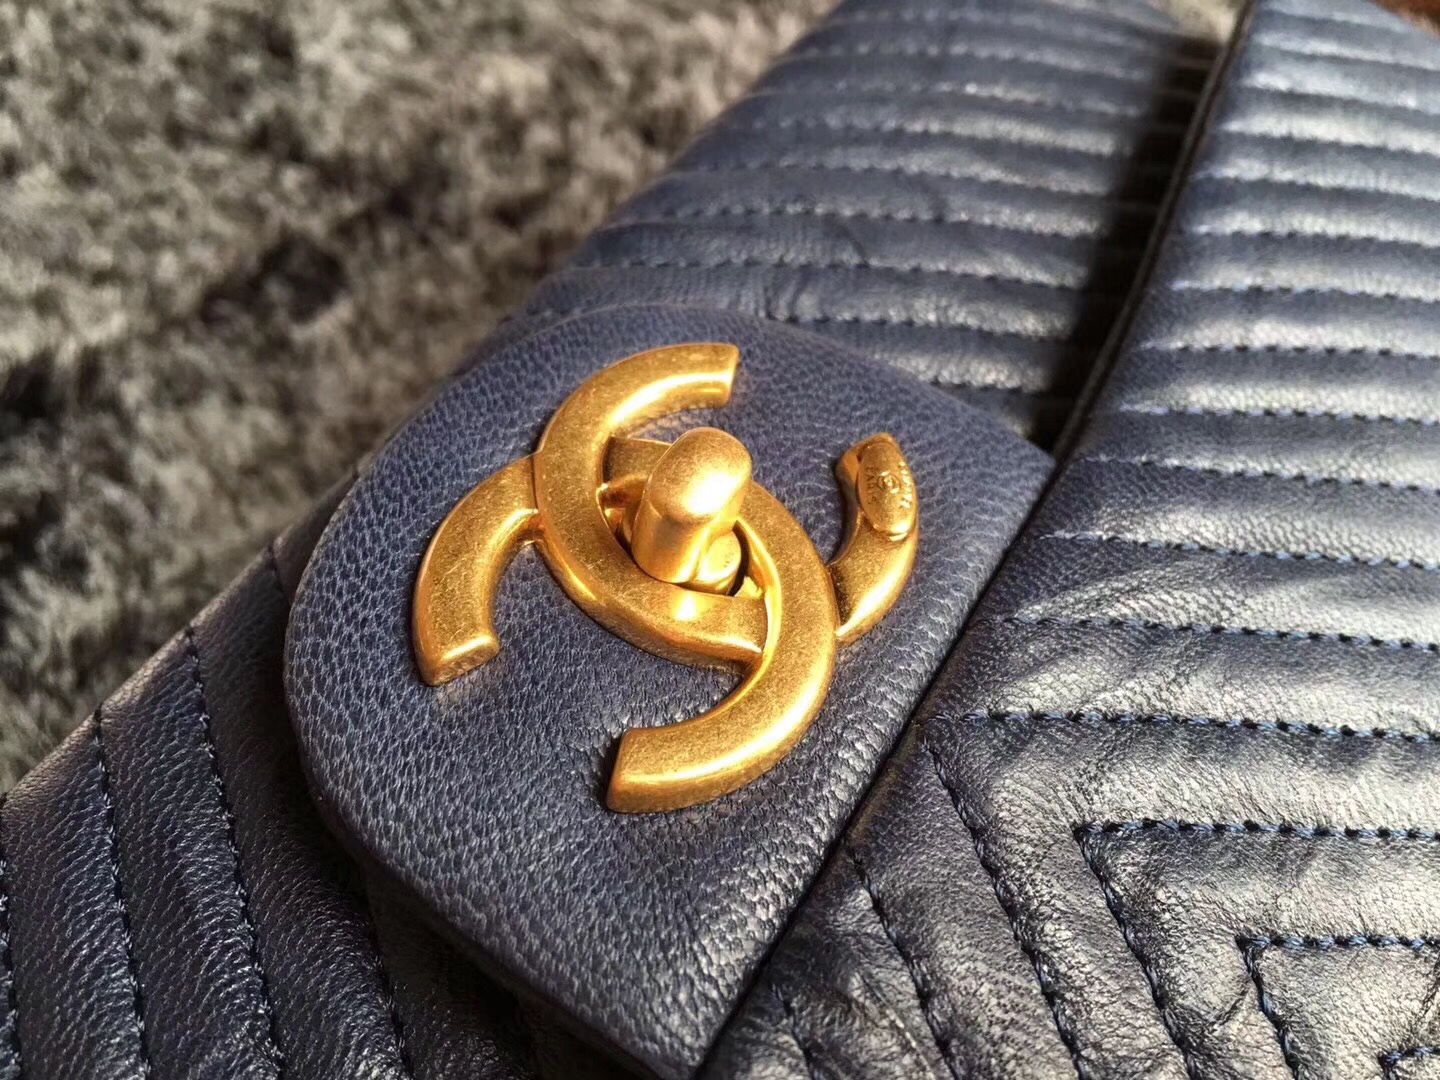 Túi xách Chanel Classic siêu cấp - TXCN134